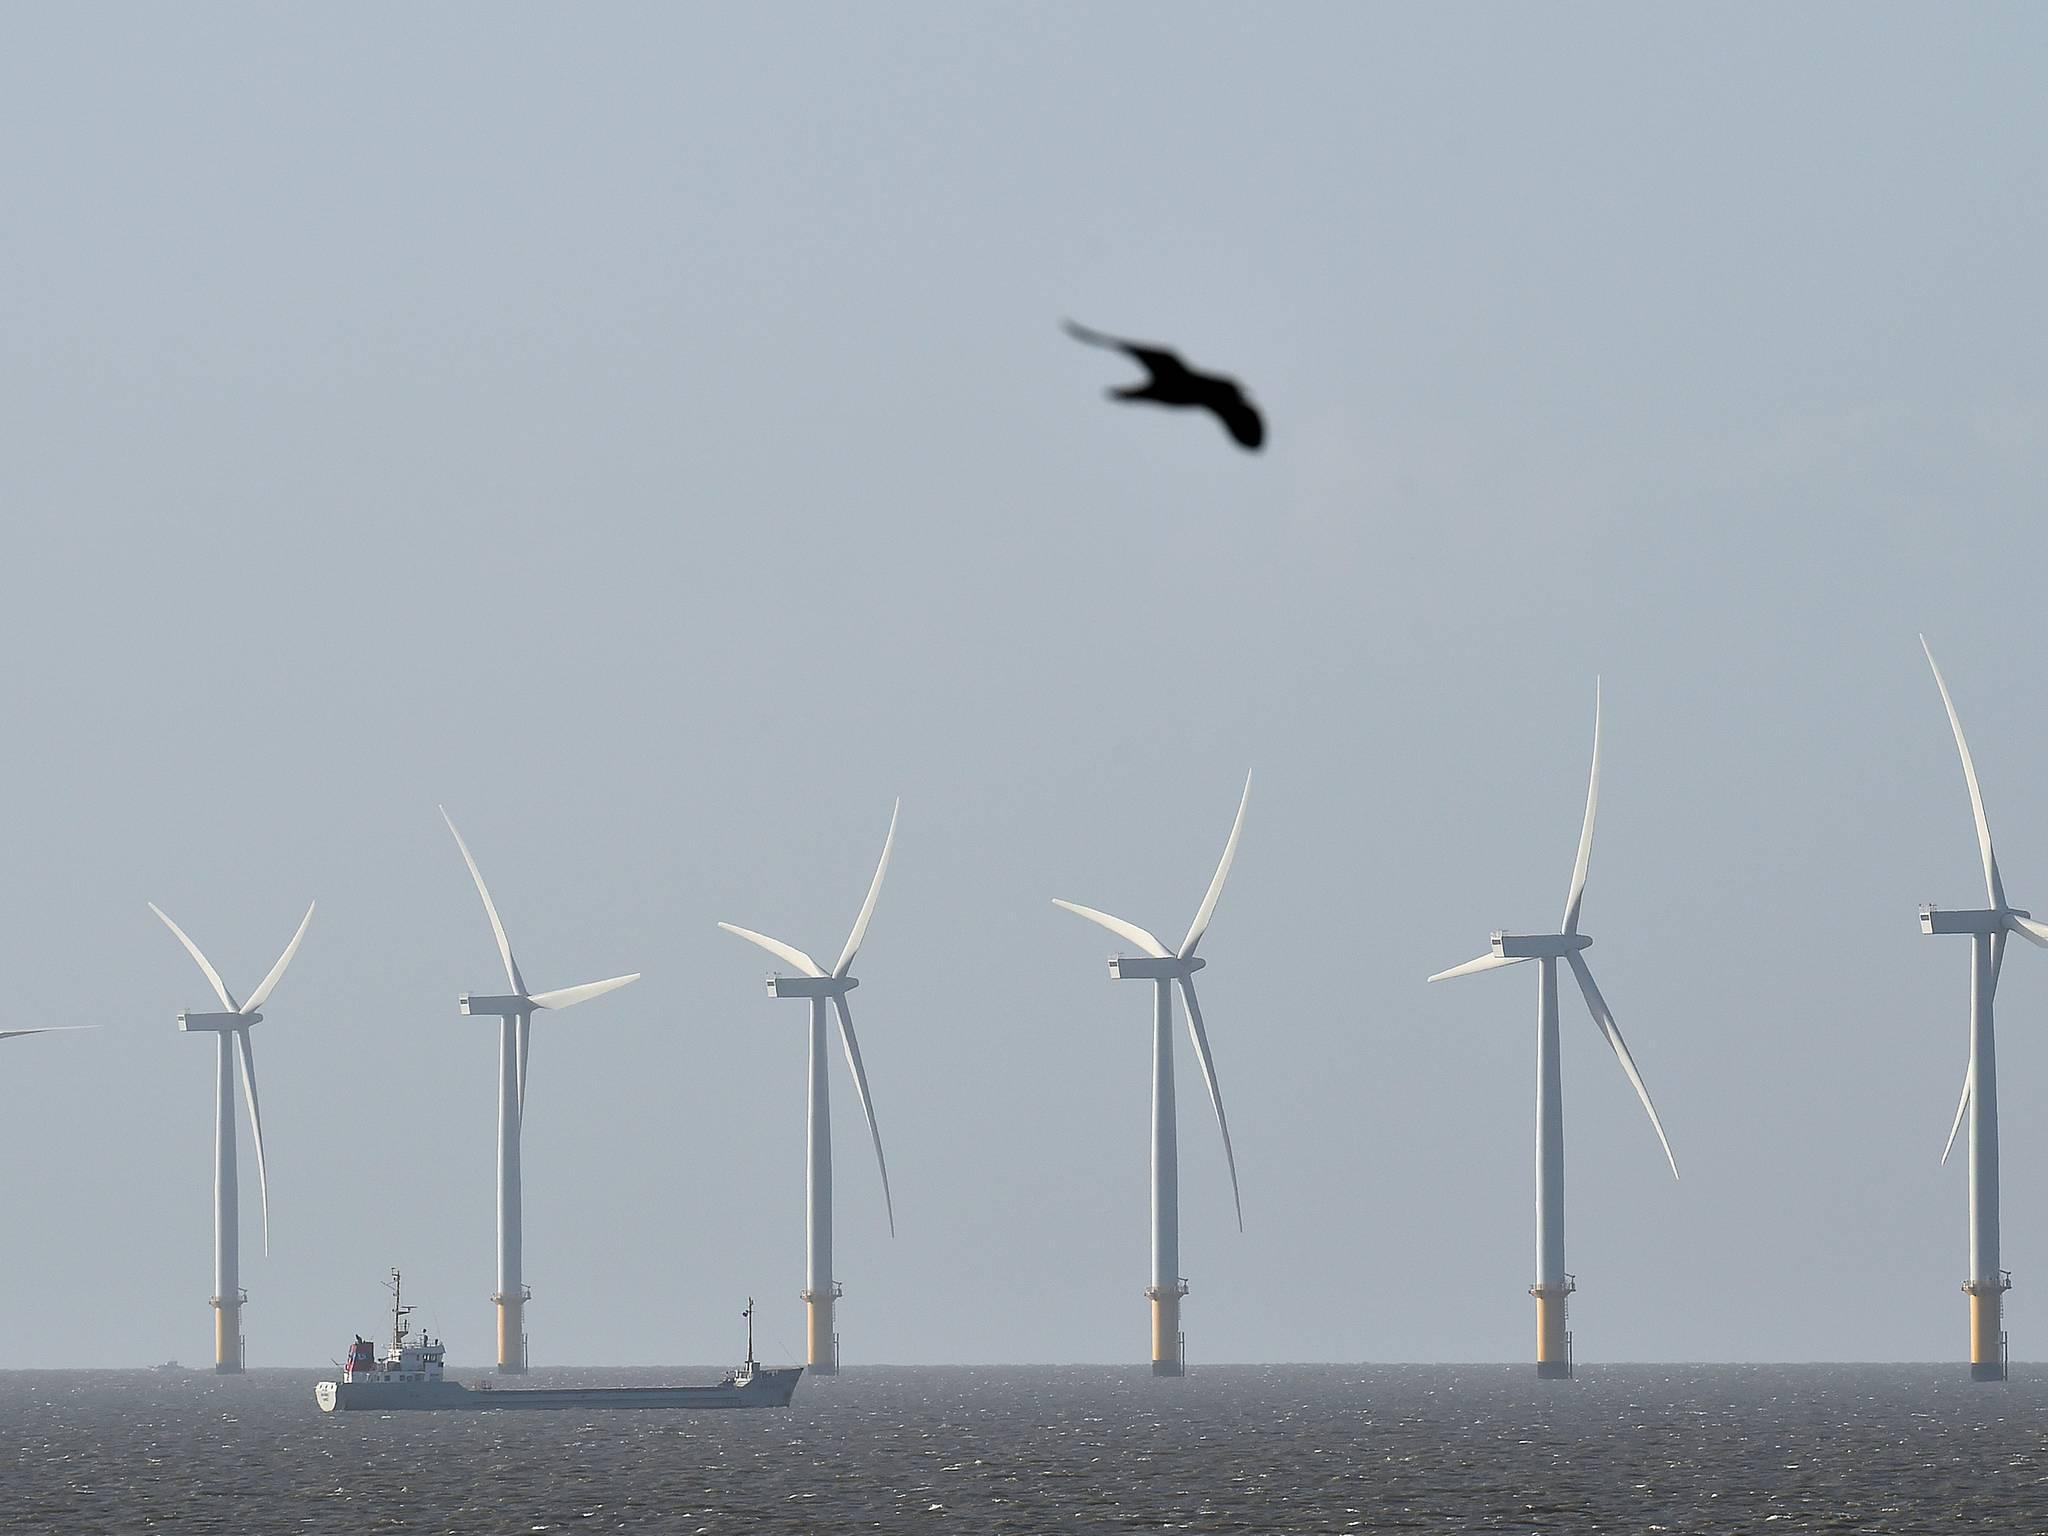 Denne offshore-vindparken i Den engelske kanal er en av mange vindparker som er dukket opp rundt den britiske kysten de siste årene.